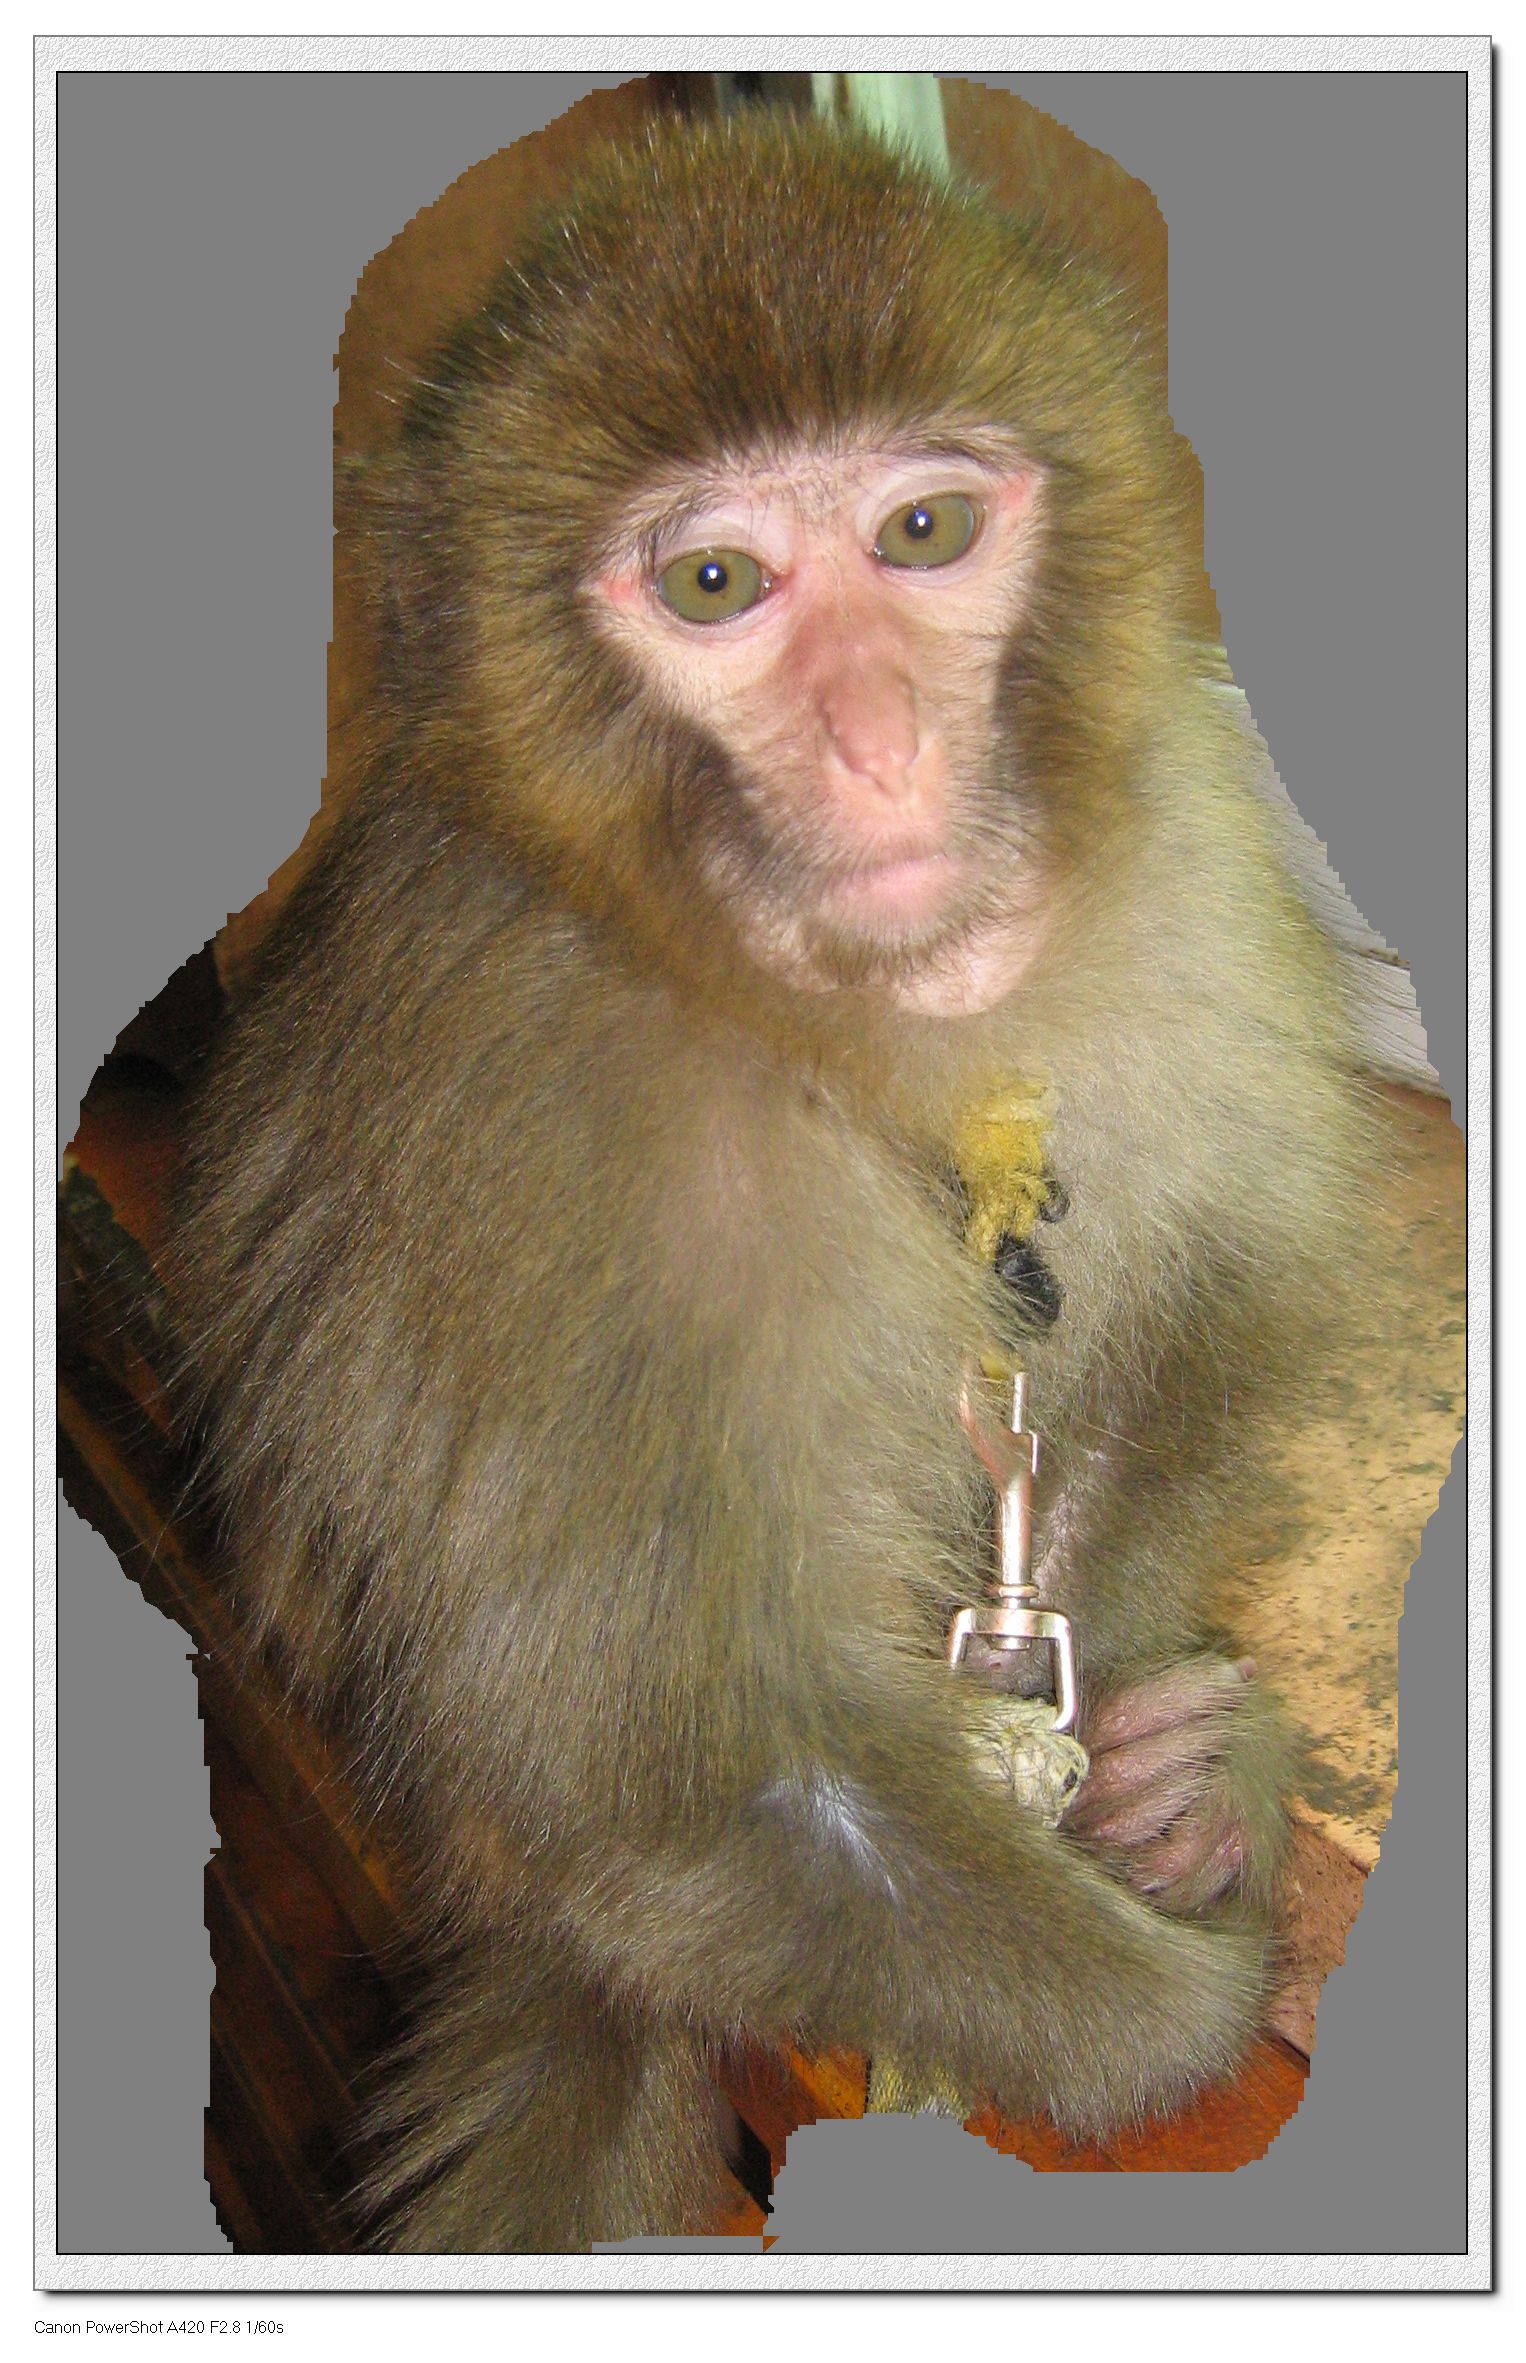 猴子耳朵图片 代表性图片